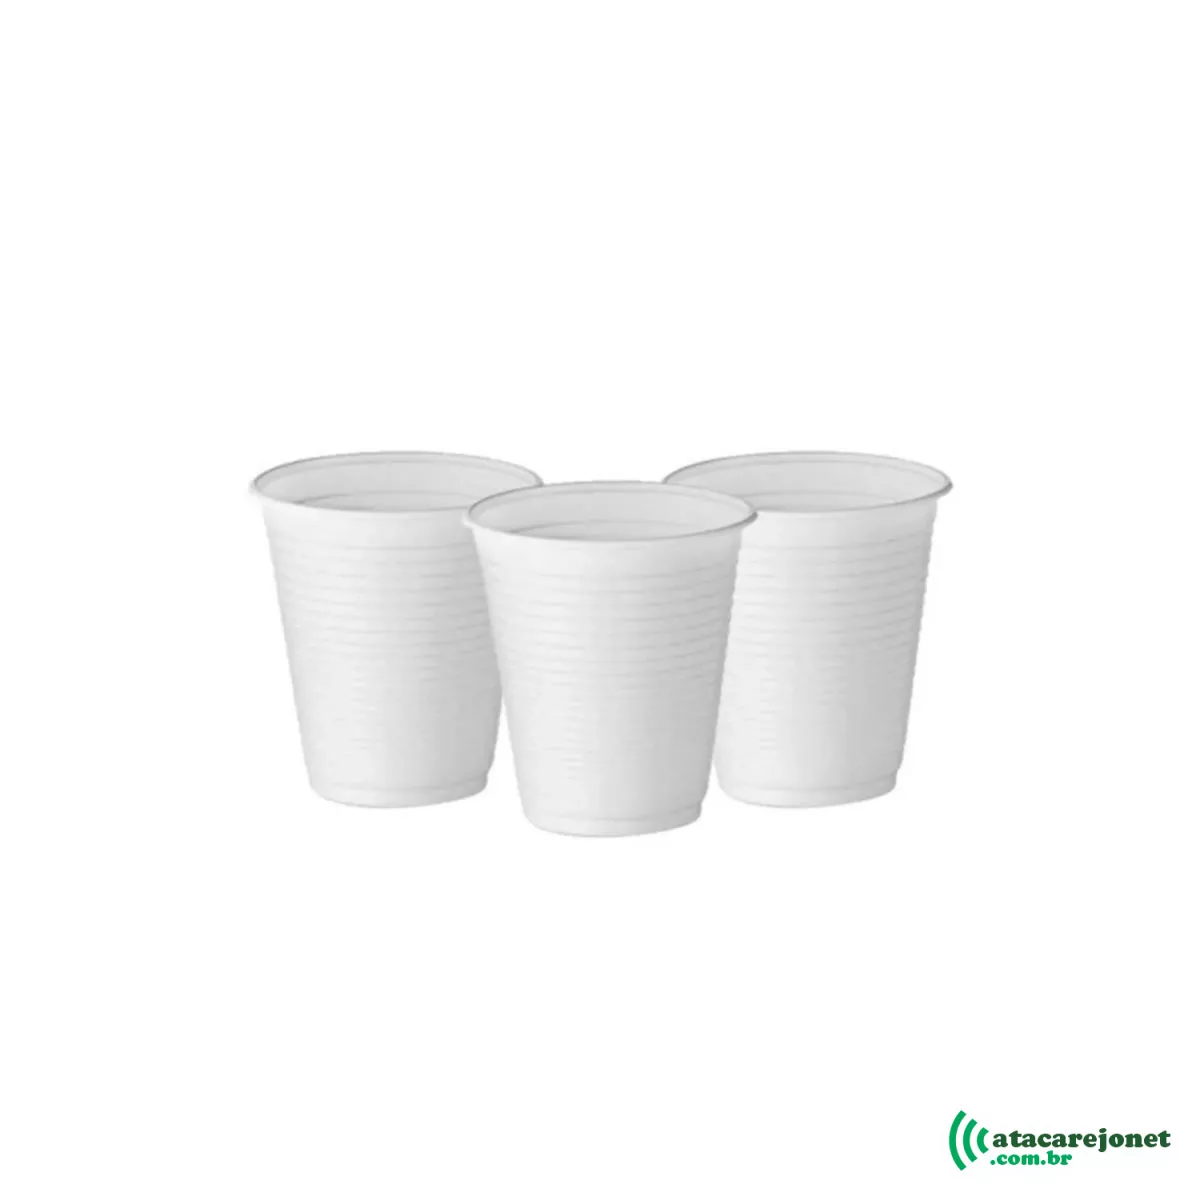 Copo Plástico Descartável Branco Embalagem com 100 unidades 180ml - Ecocoppo